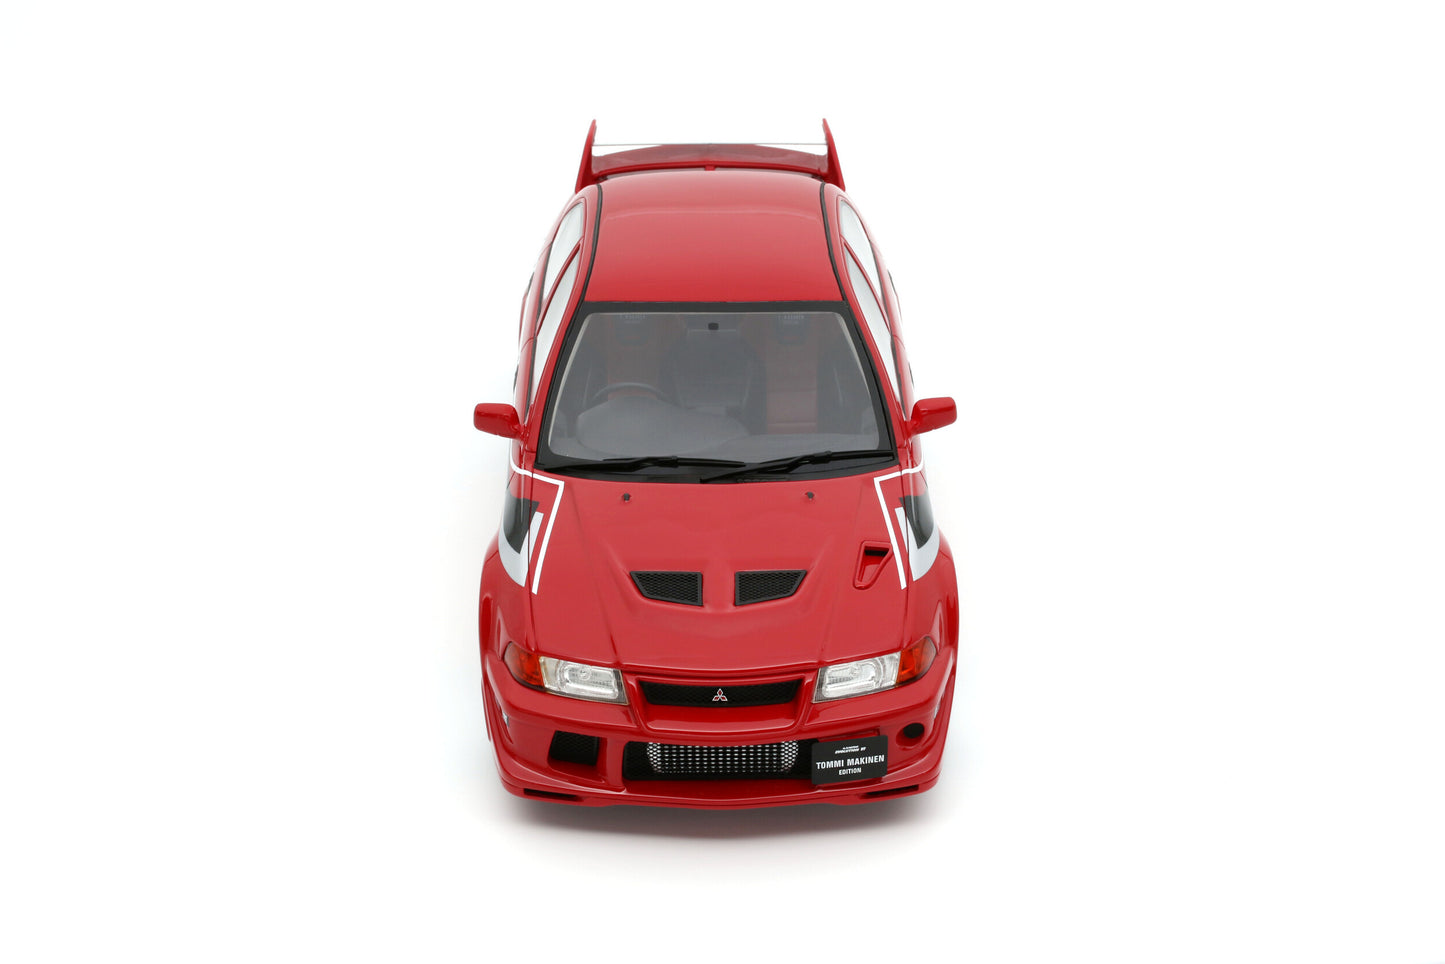 OttOmobile - Mitsubishi Lancer Evo VI "Tommi Makinen Edition" (Passion Red) 1:18 Scale Model Car